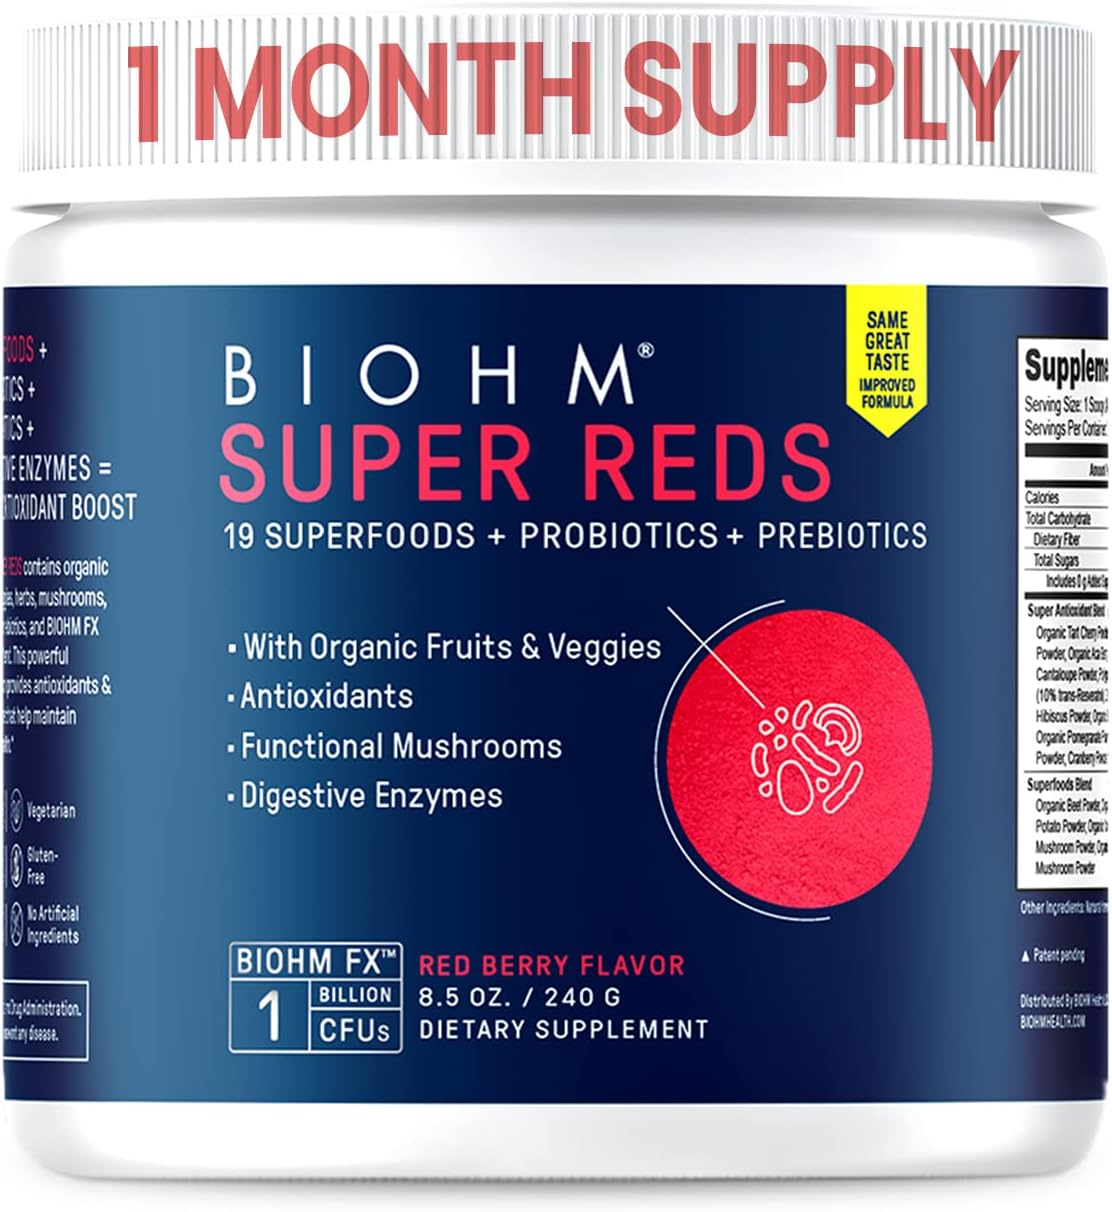 BIOHM Super Reds Powder Review